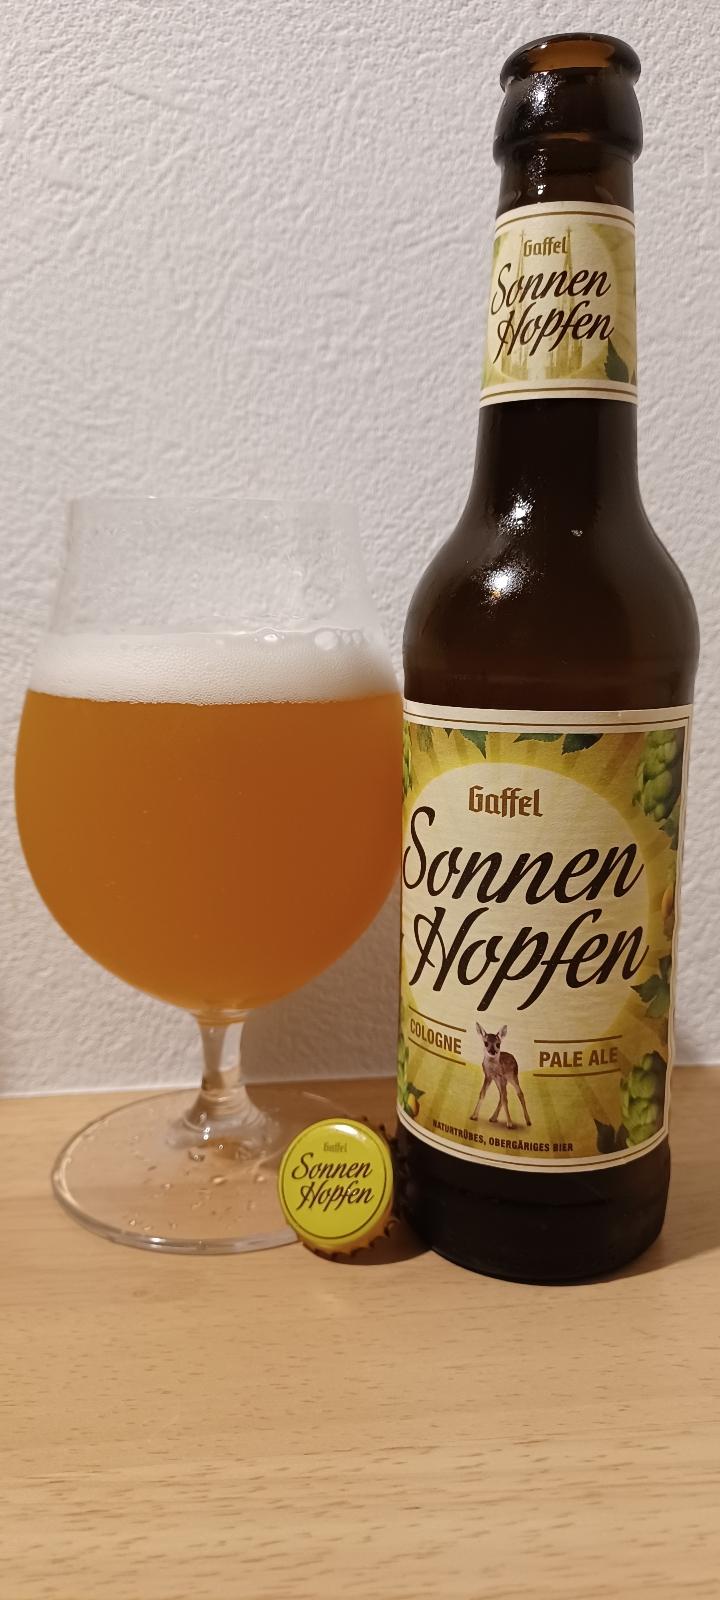 Sonnen Hopfen Cologne Pale Ale